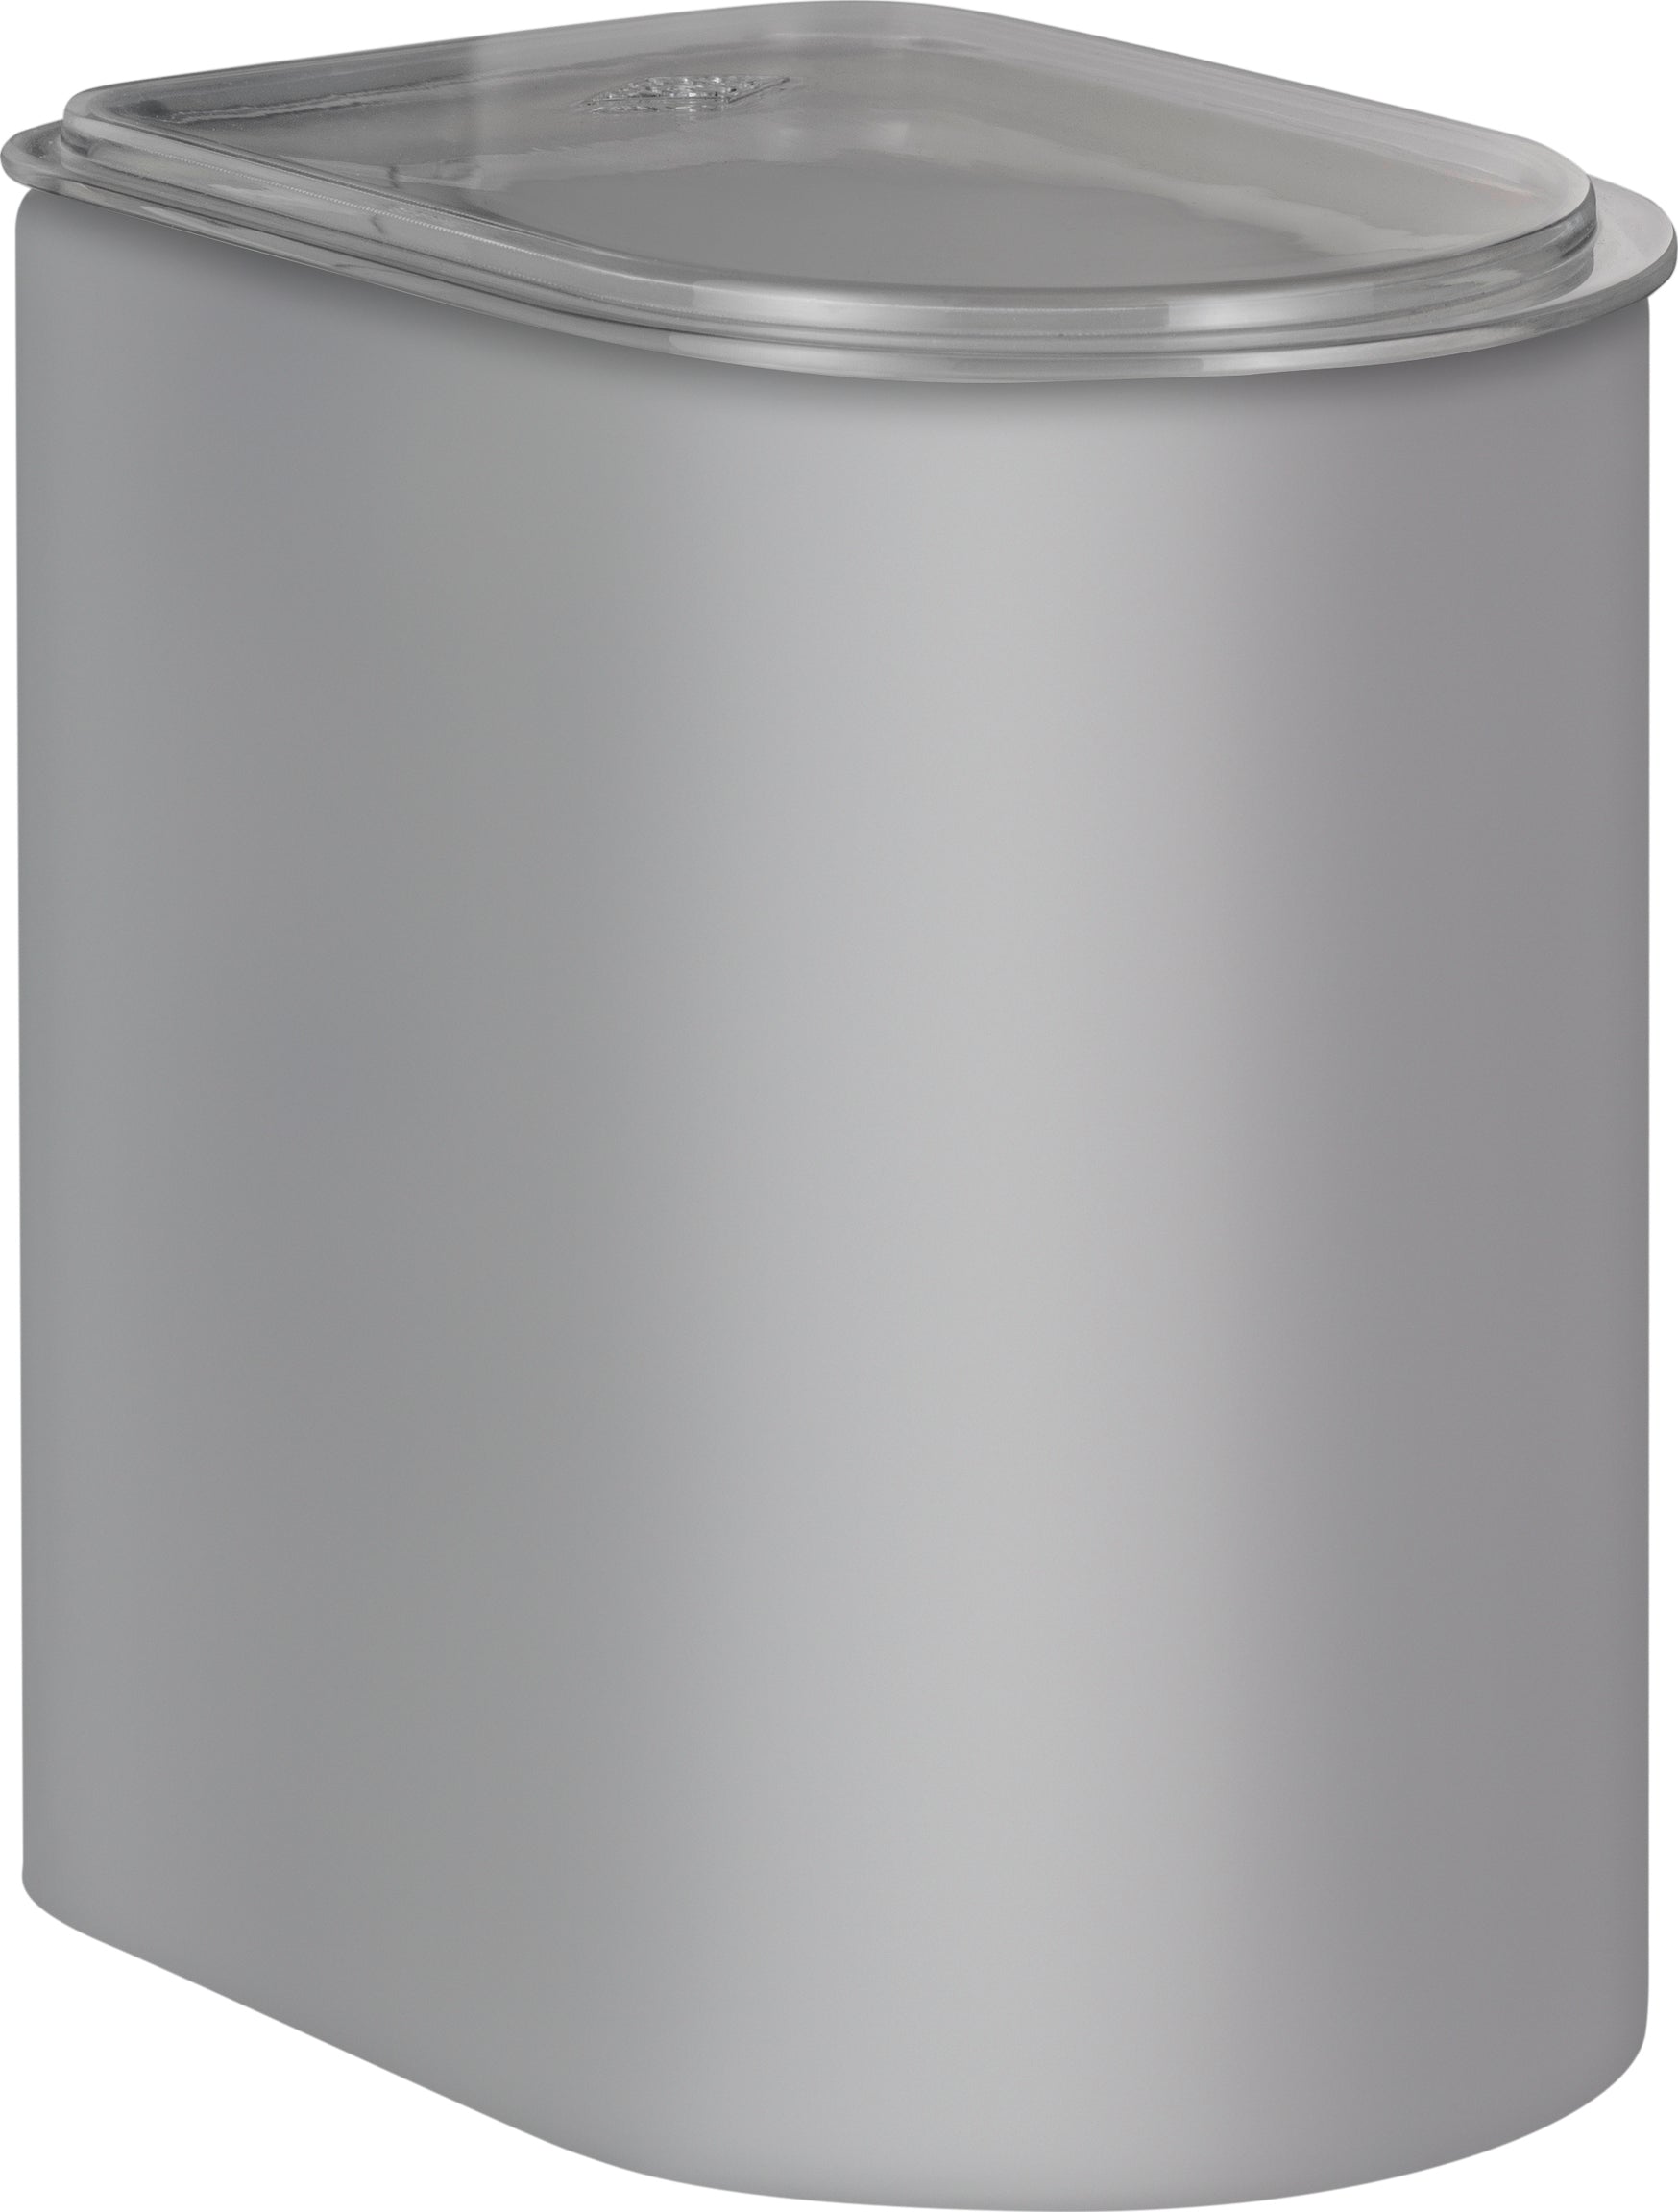 Wesco Canister 2,2 liter med akryl lokk, kjølig grå matt